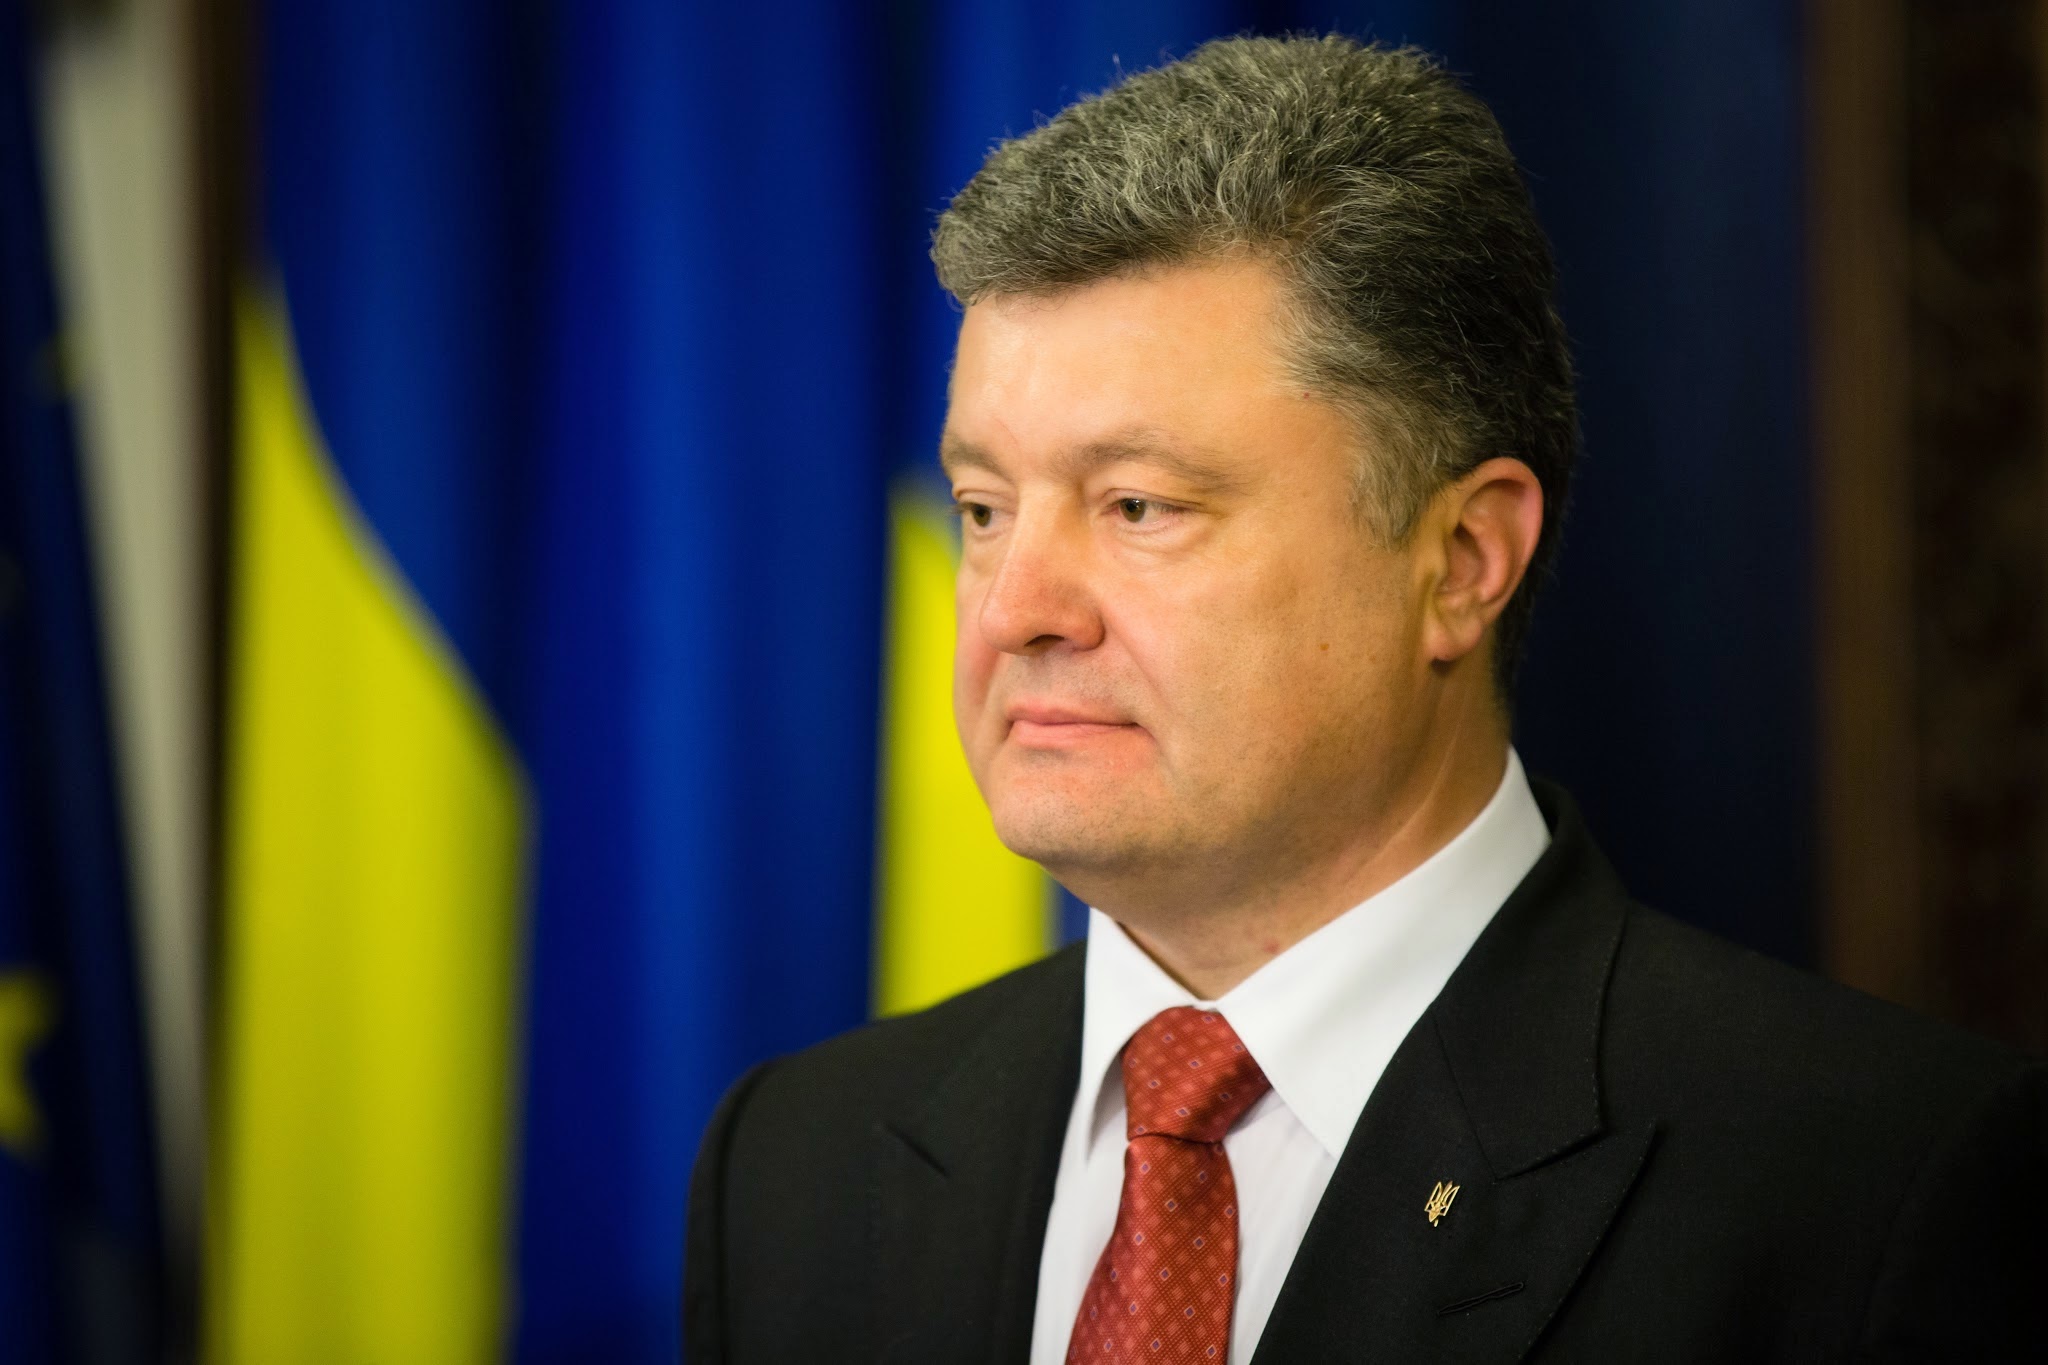 "Вступил в силу сегодня", - Порошенко поздравил украинцев с важной победой  